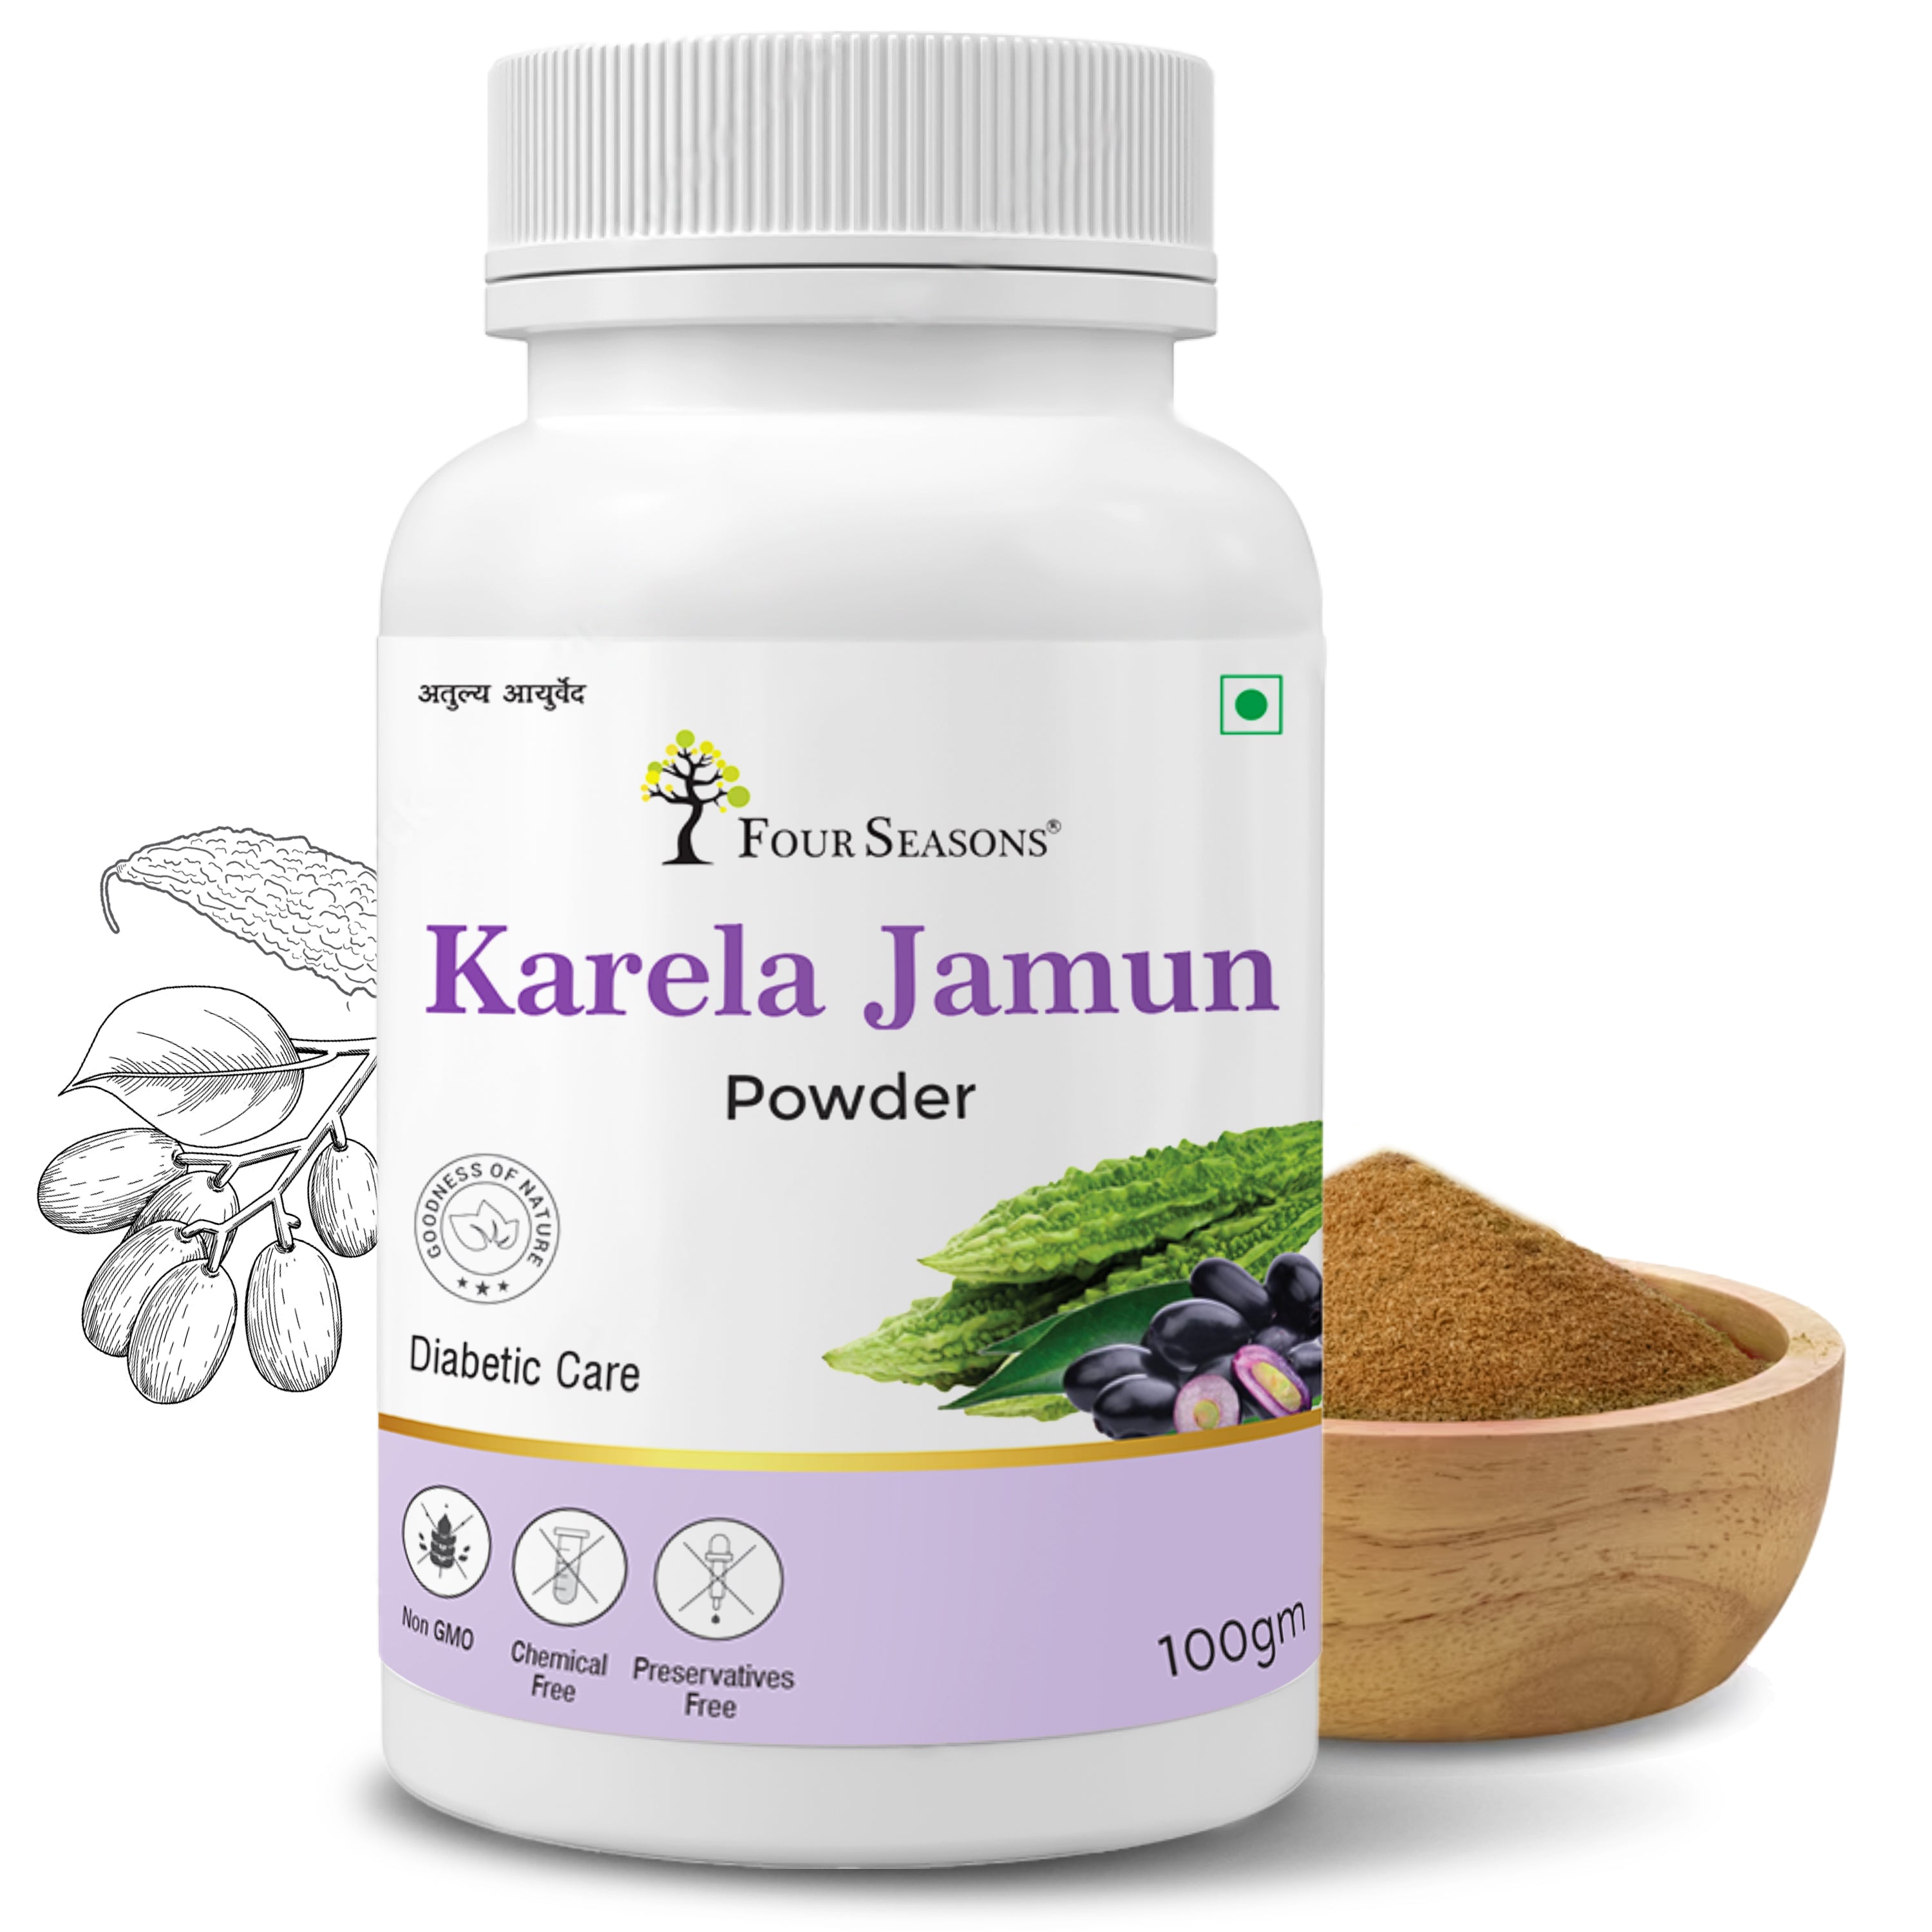 Karela Jamun Powder